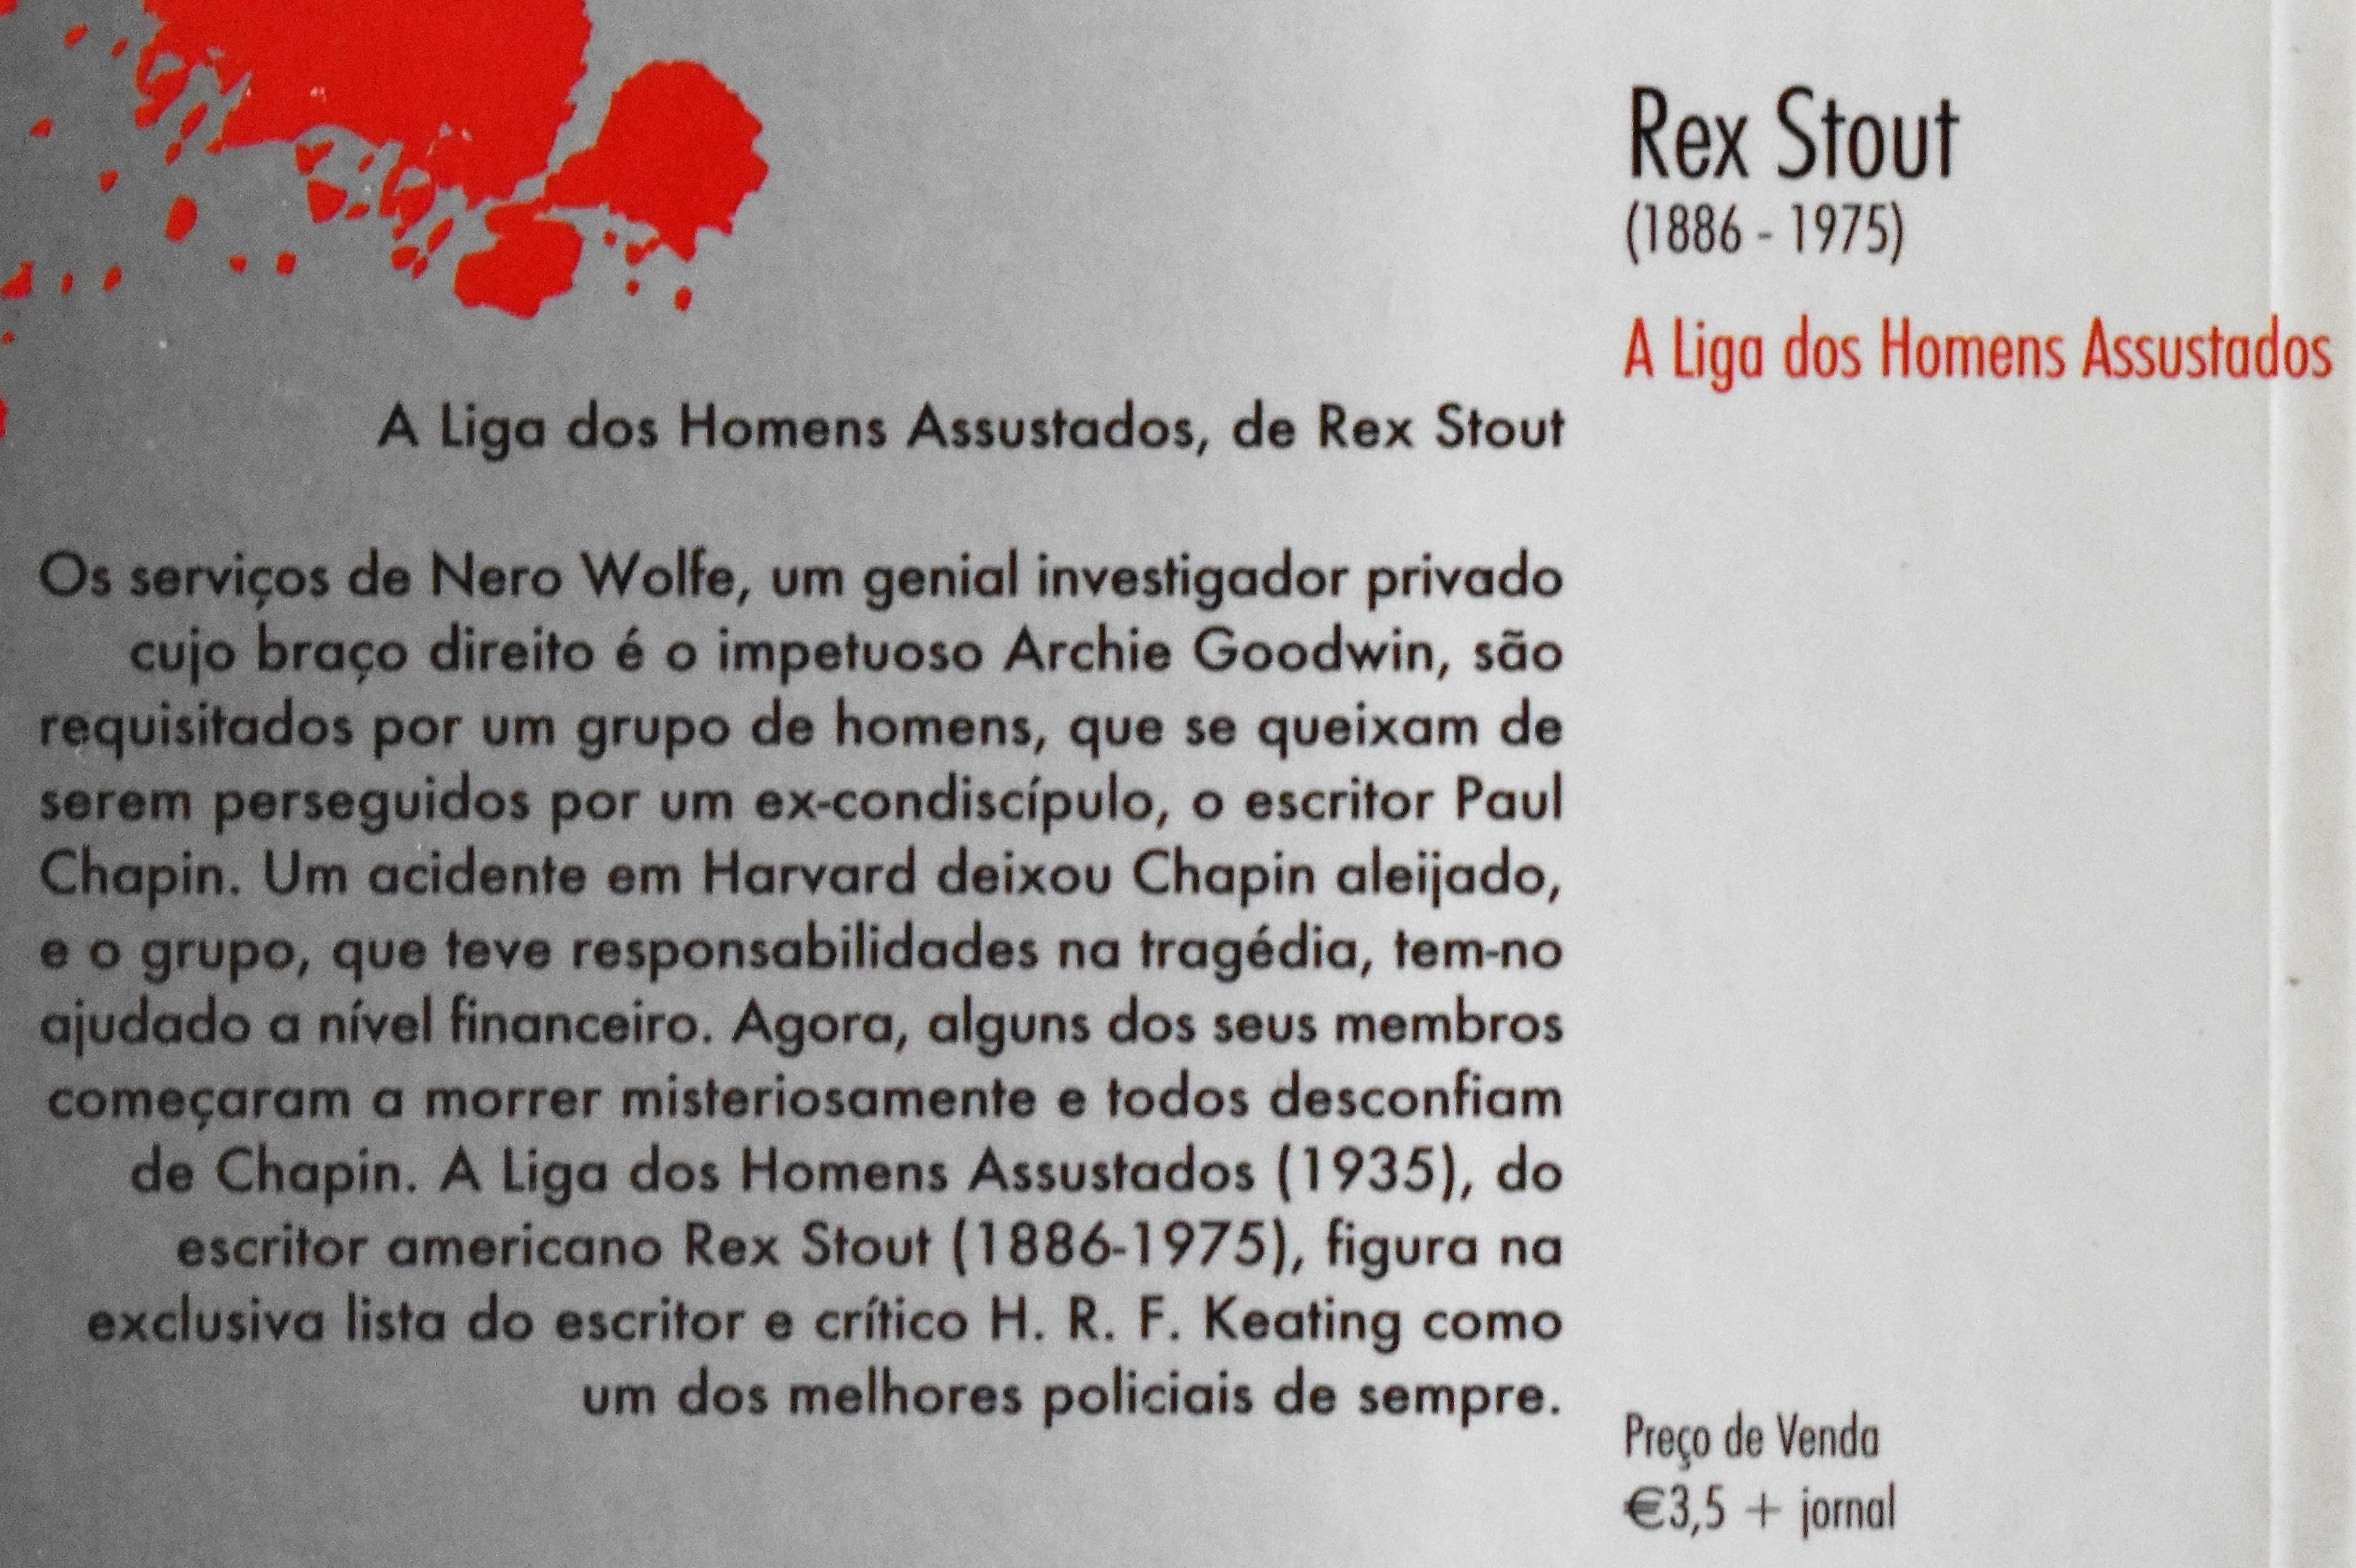 Rex Stout - A Liga dos Homens Assustados (Nero Wolf)